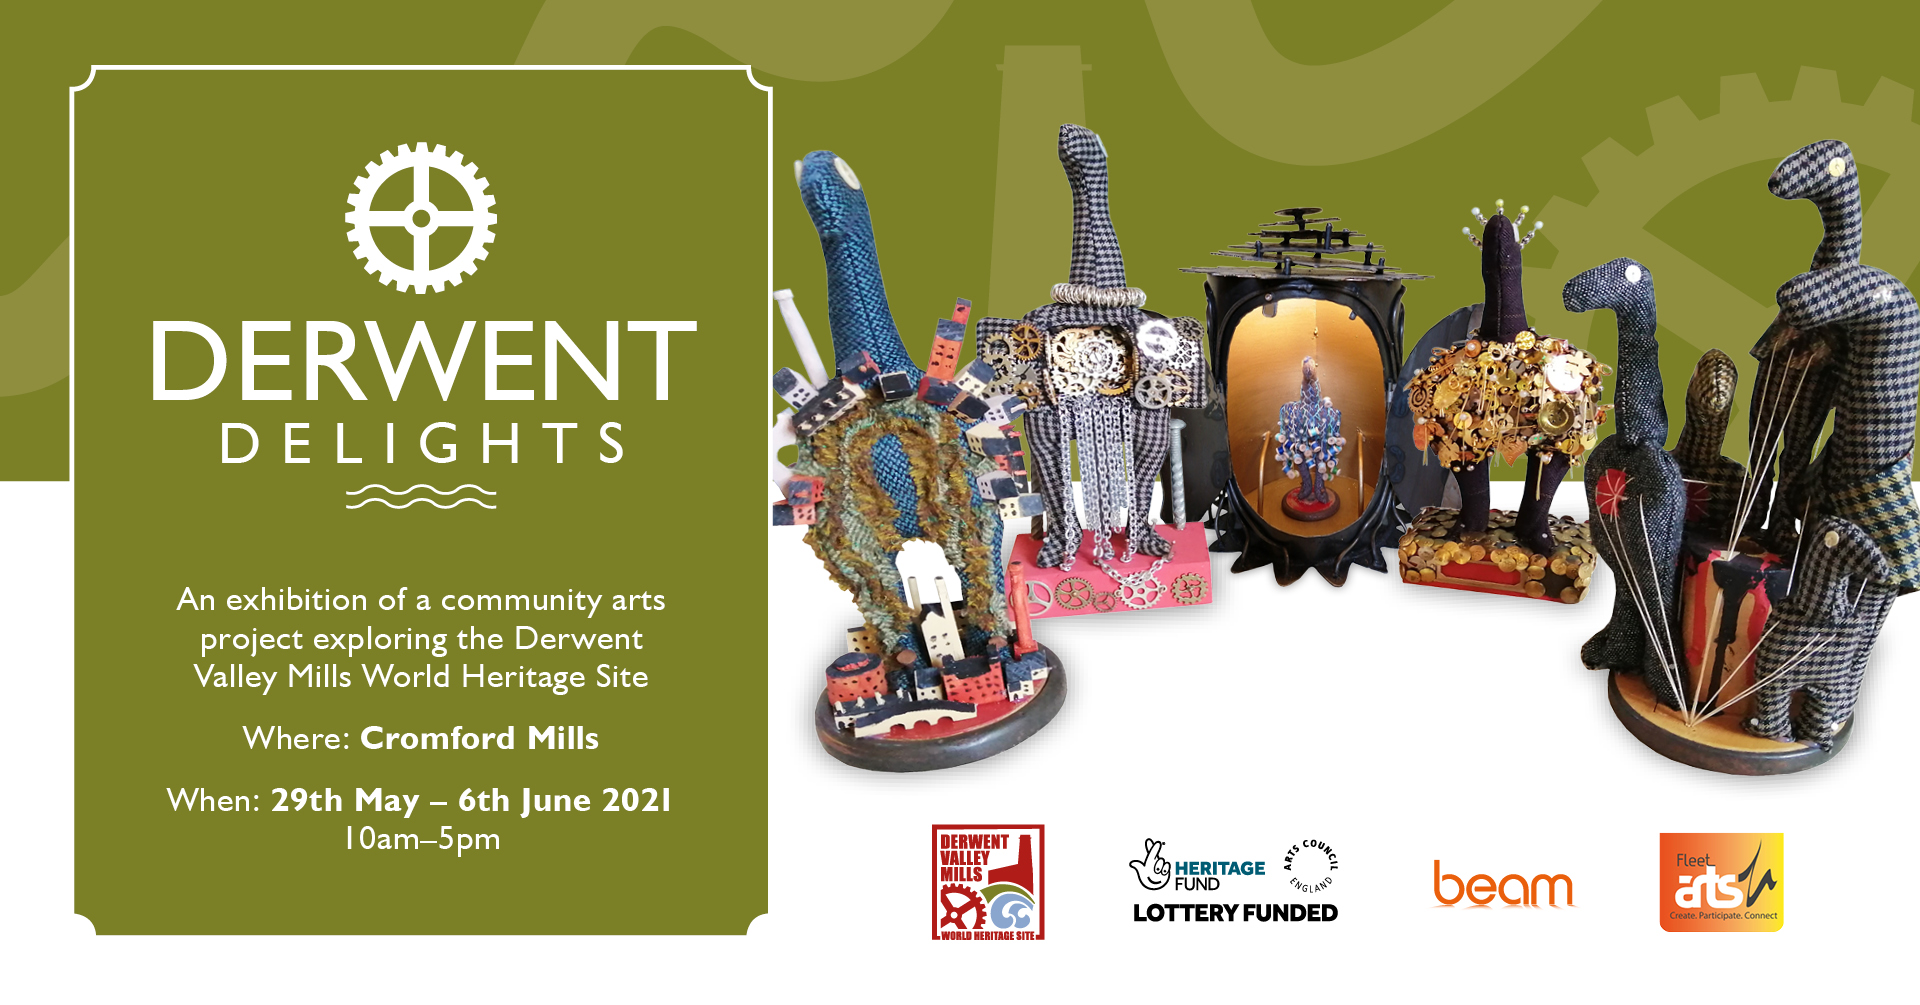 Derwent Delights exhibition